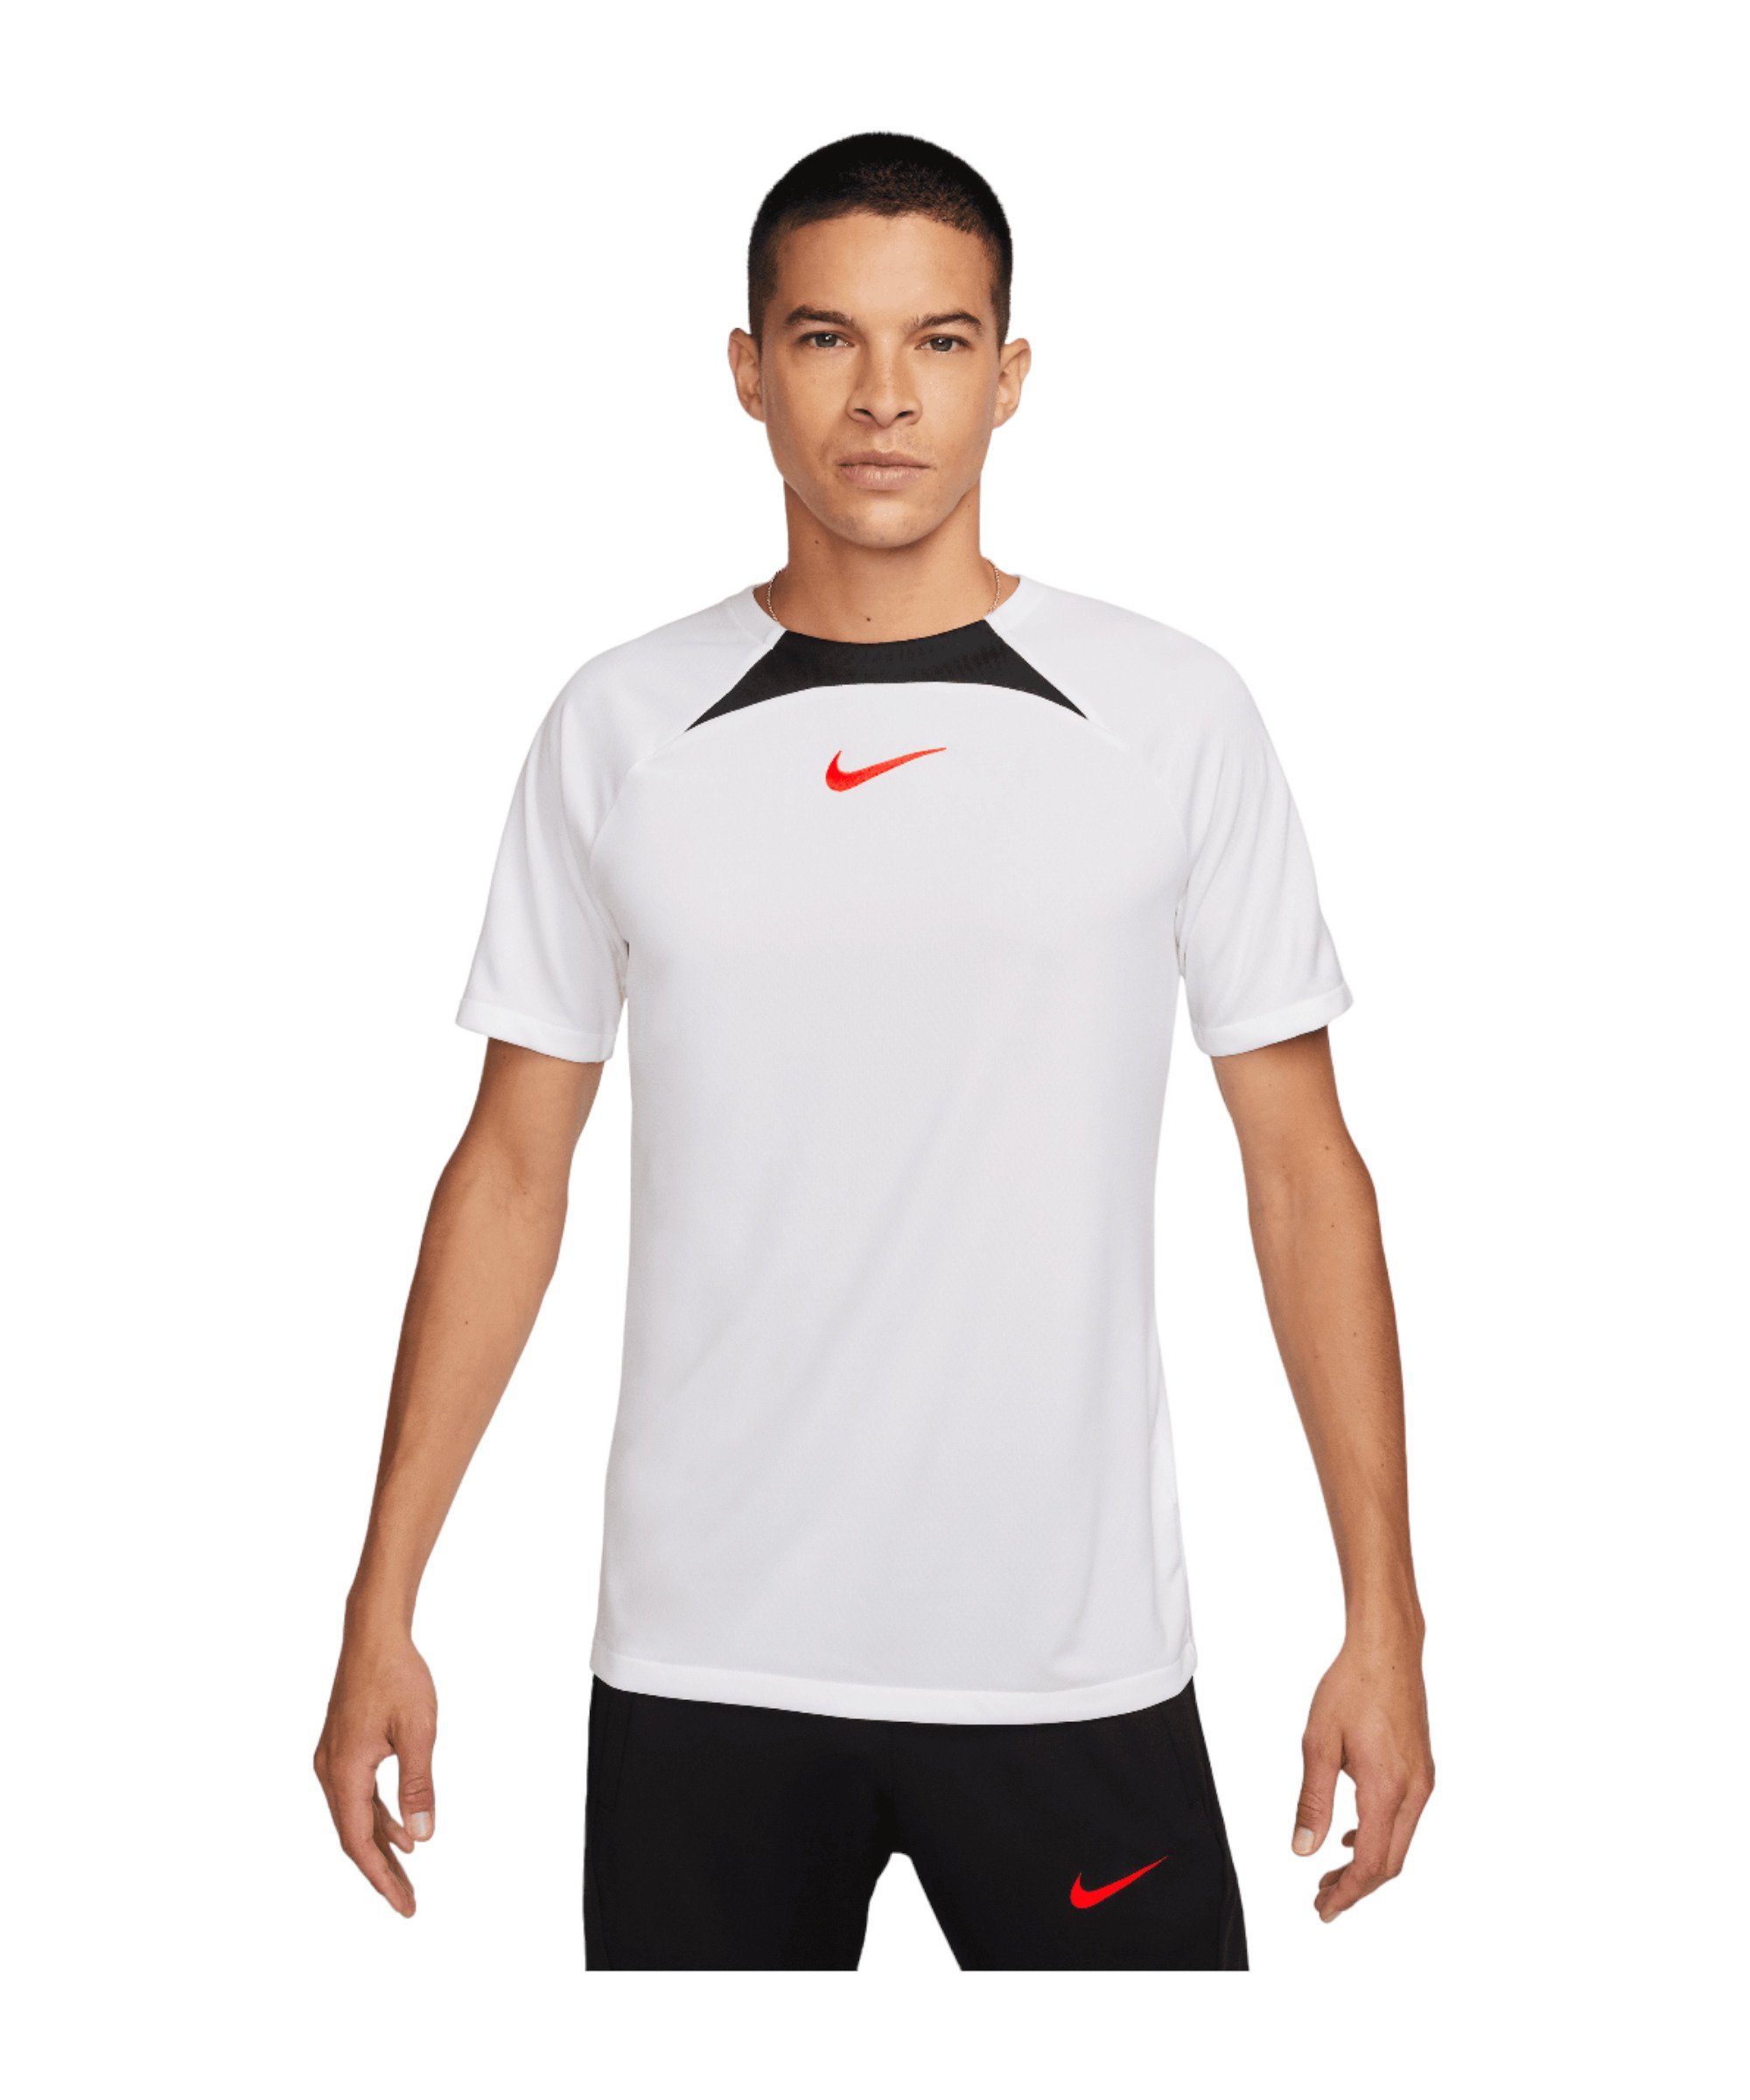 Nike default T-Shirt weissschwarzrot T-Shirt Academy